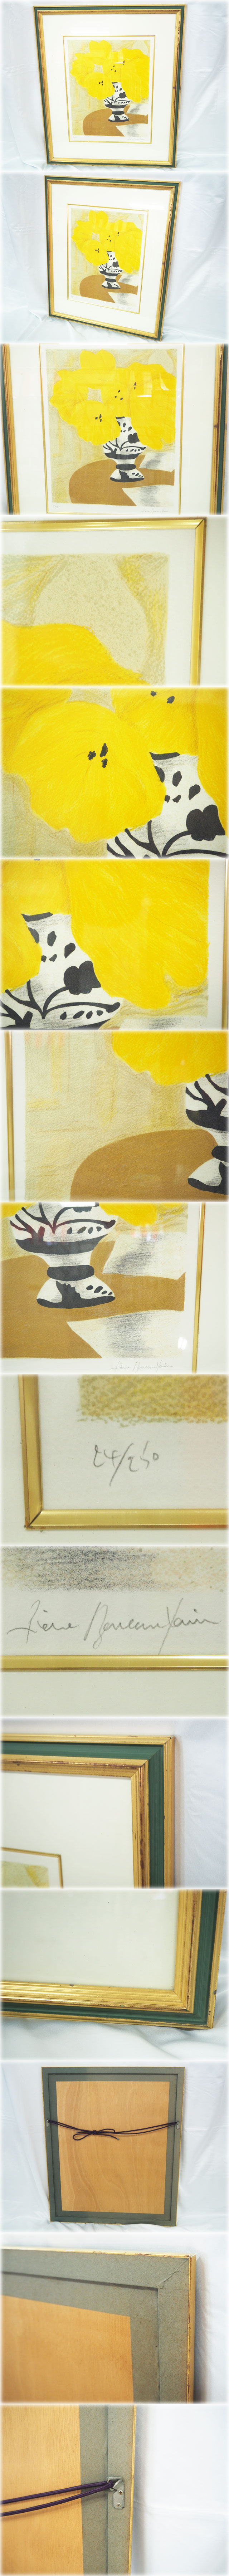 【得価在庫】ピエール・ボンコンパン リトグラフ 「テーブルの上の黄色いブーケ」 額付 鉛筆サインNo.24/250 Pierre Boncompain 石版画、リトグラフ